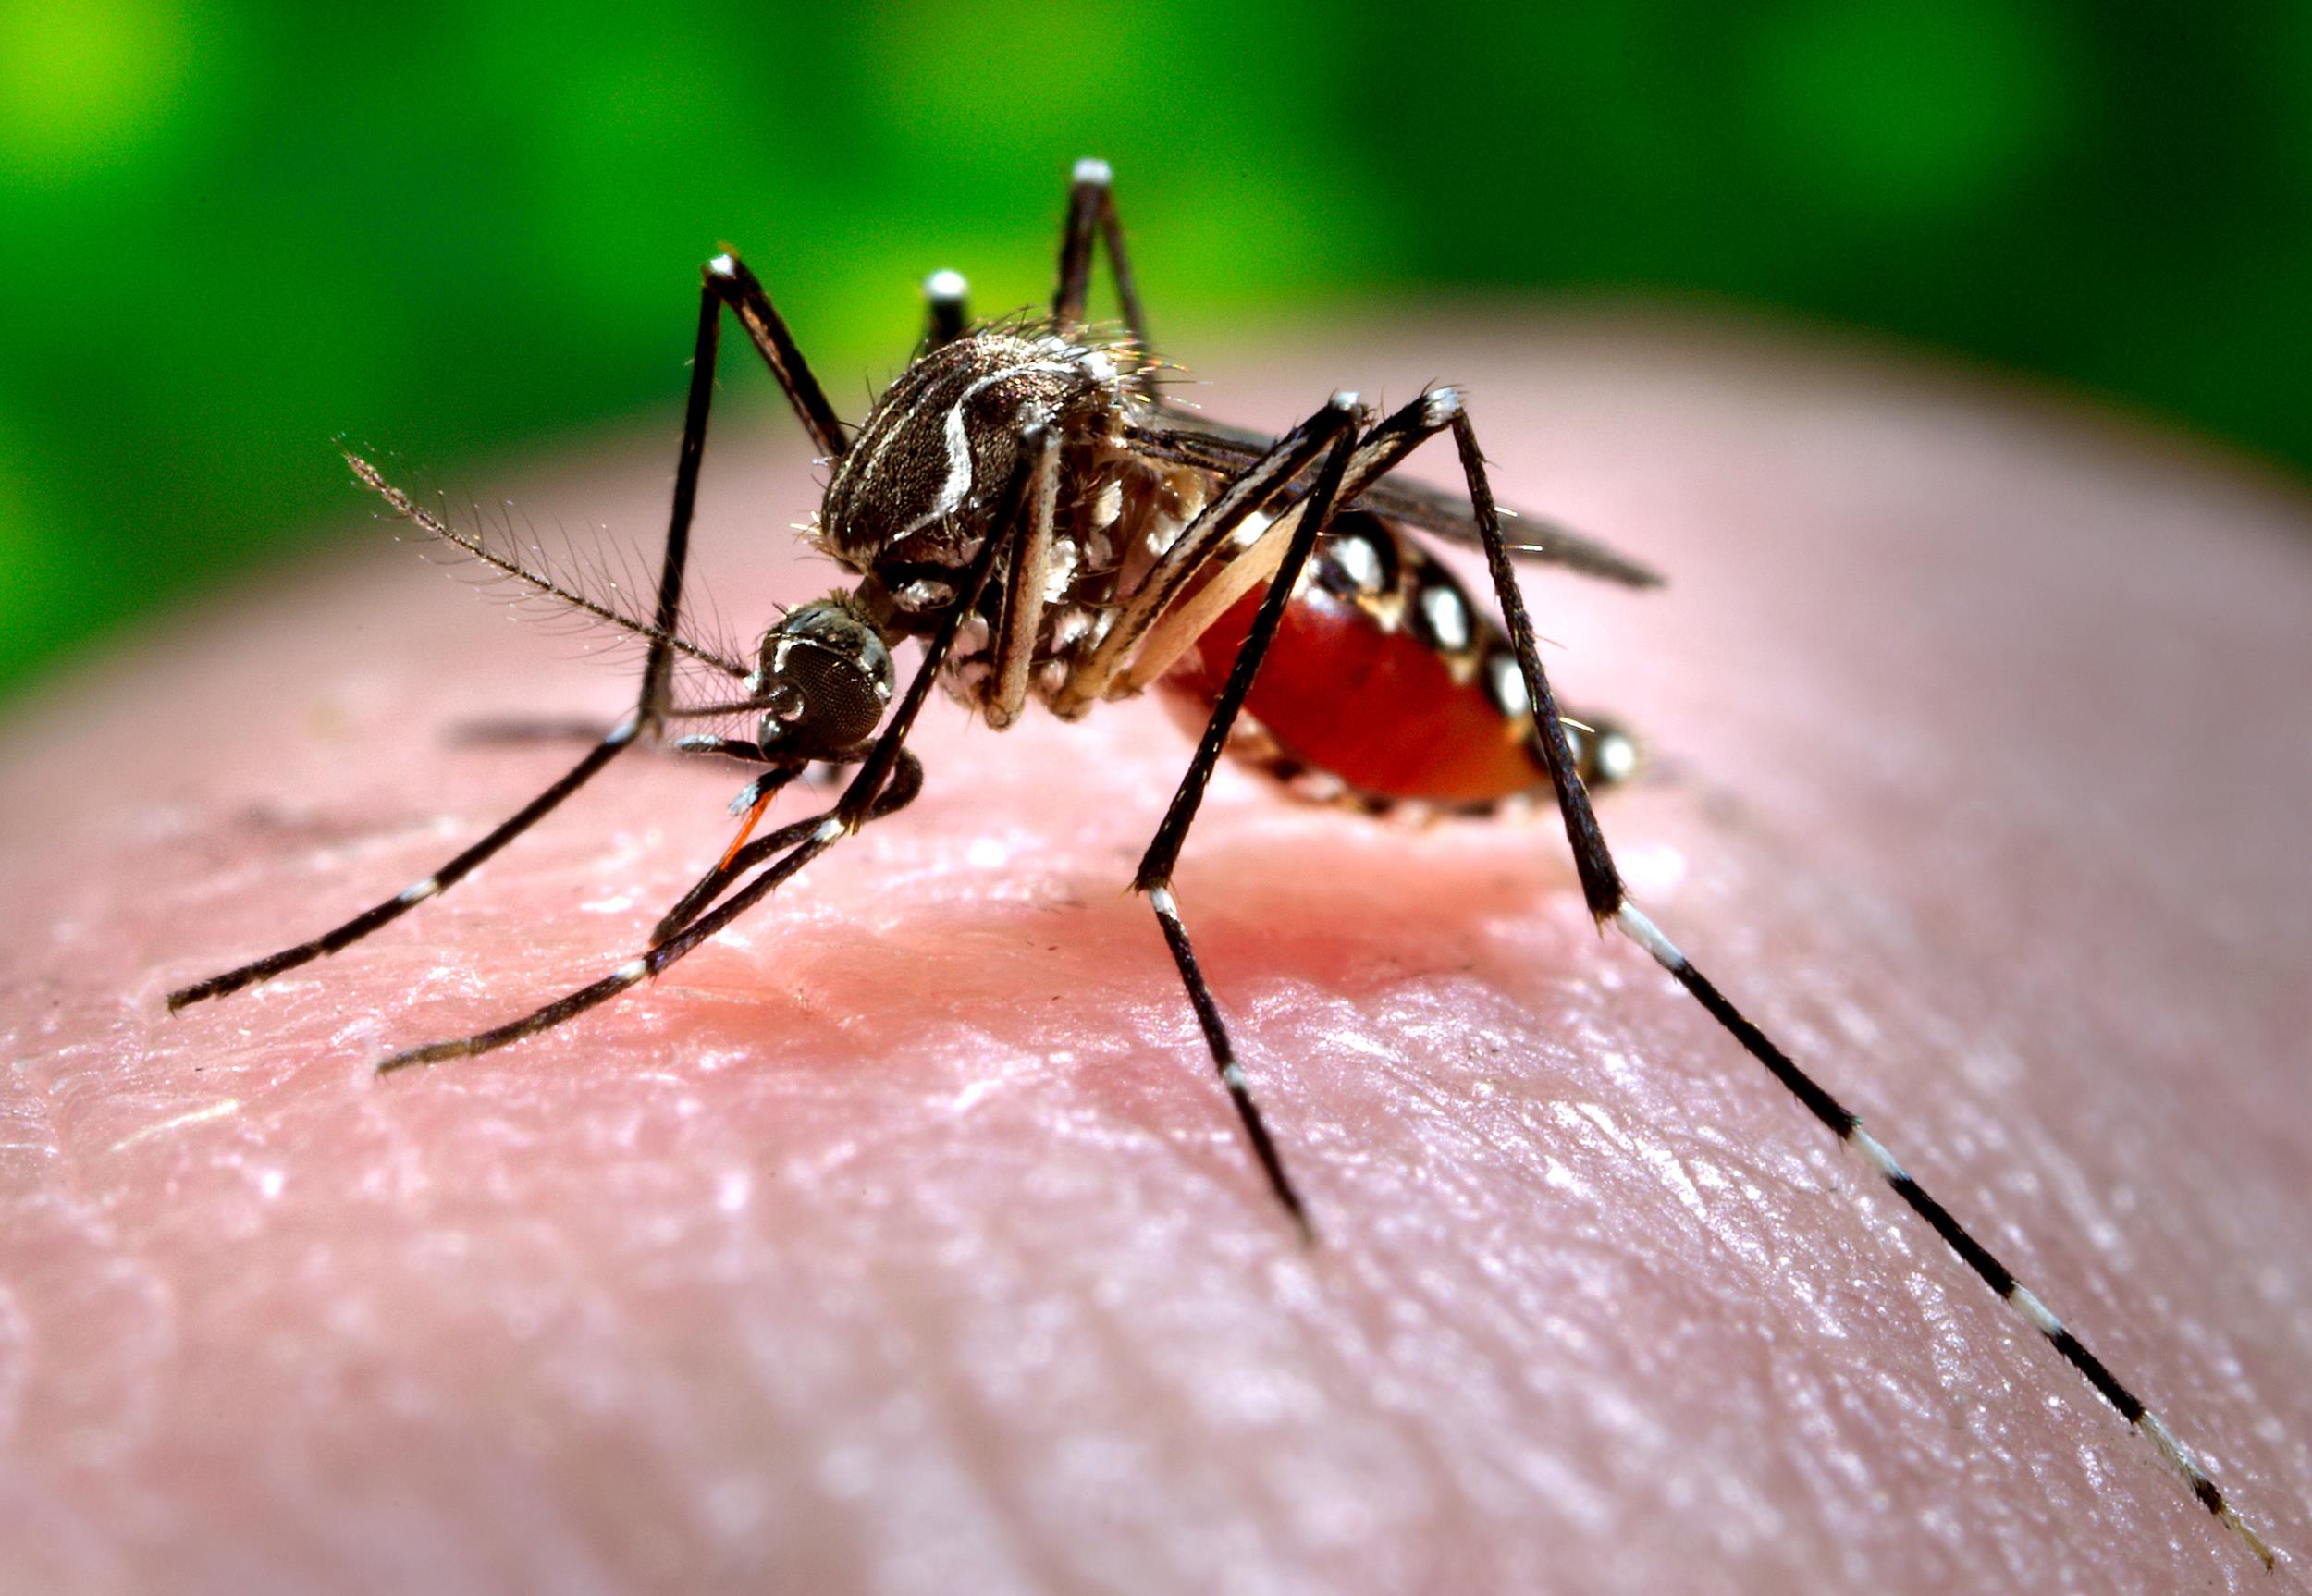 Chikungunya, e sindaca Raggi non disinfestò...per il sacro blog: gli insetticidi come i vaccini